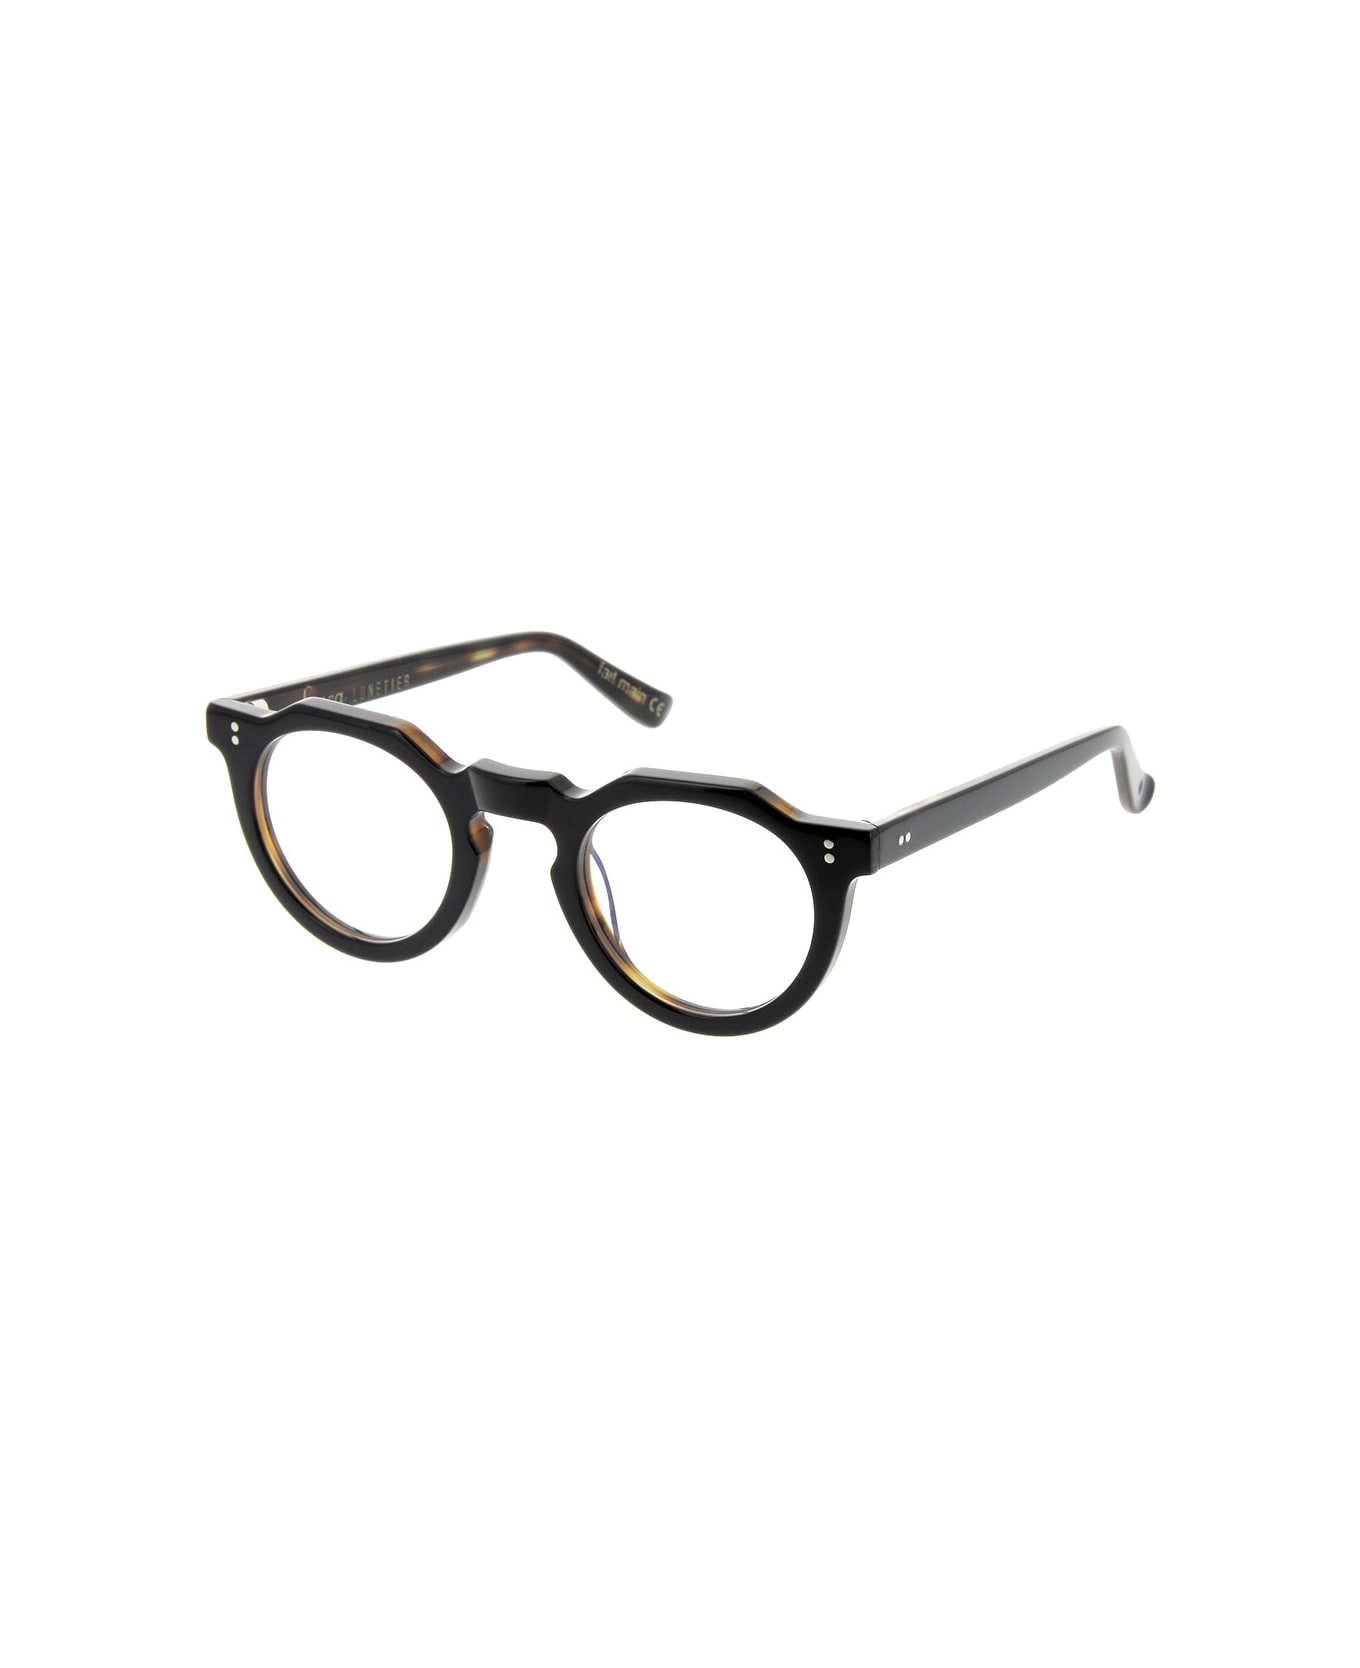 Lesca Picas XL K5 Glasses - Nero e tartaruga